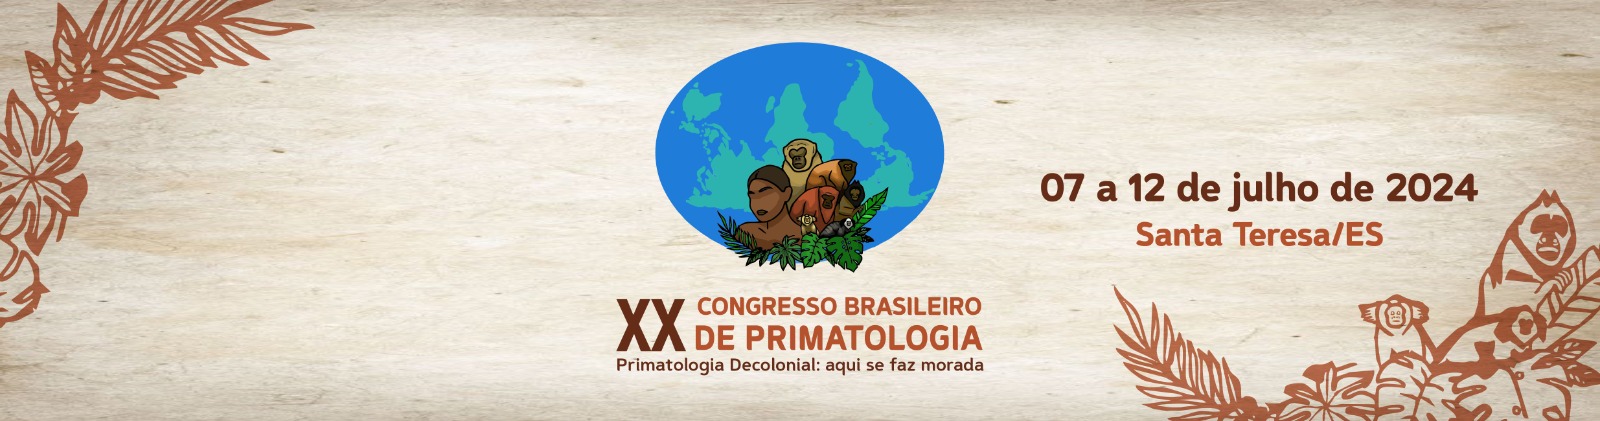 XX Congresso Brasileiro de Primatologia